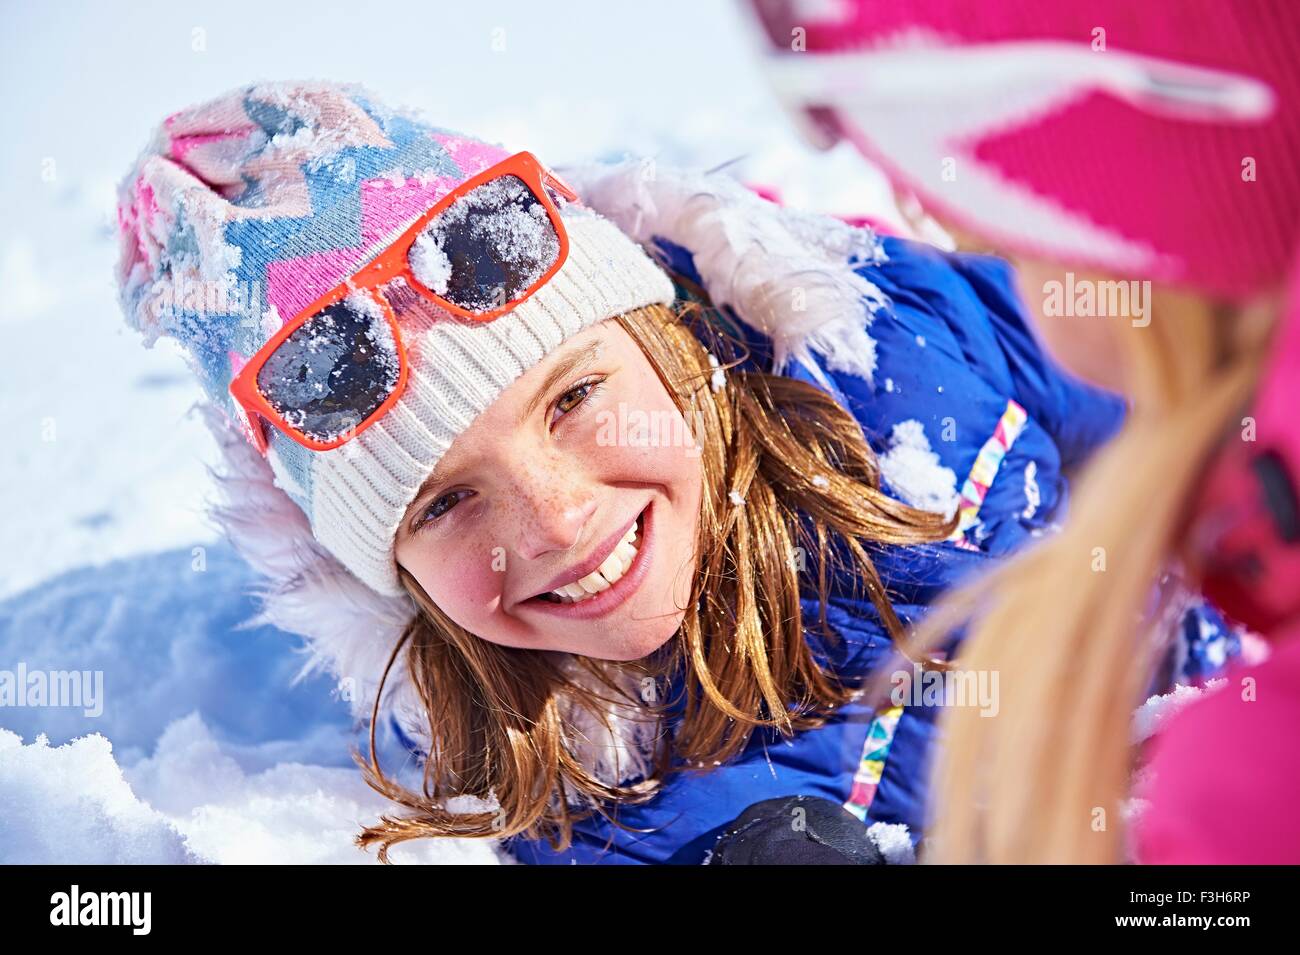 Mère et fille jouer dans la neige, Chamonix, France Banque D'Images